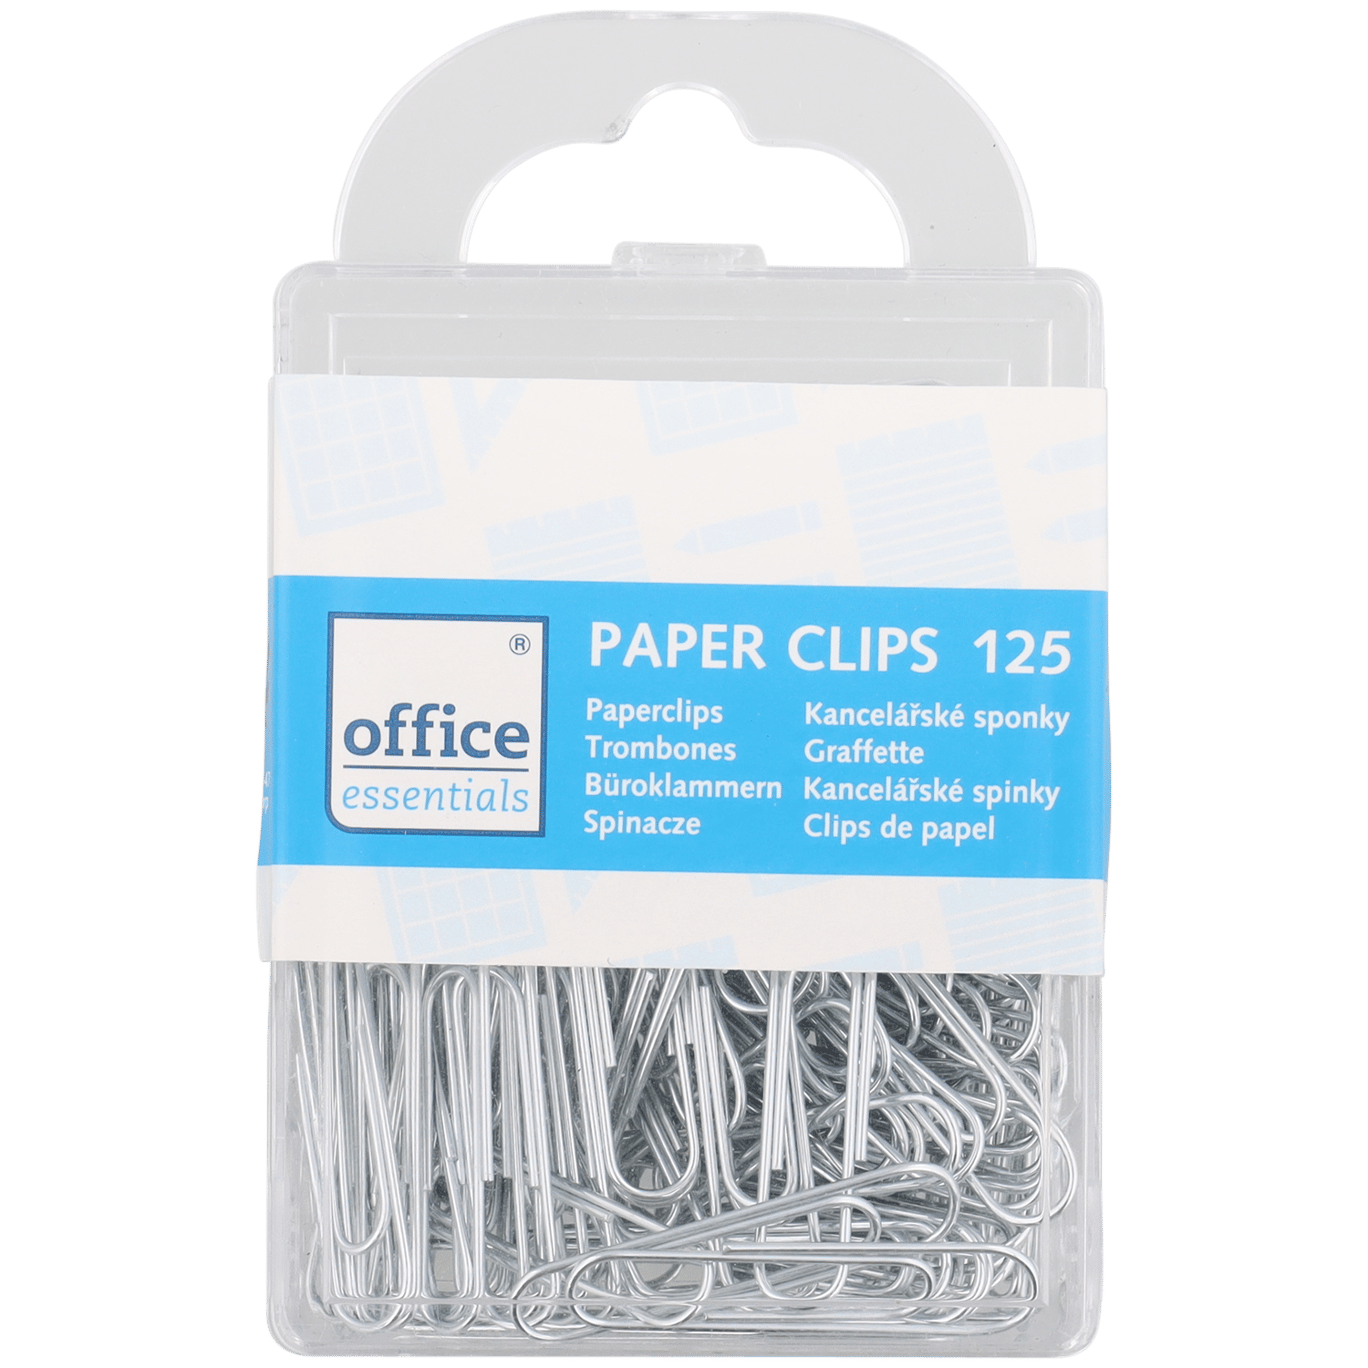 Treble voering bedrijf Office Essentials paperclips | Action.com